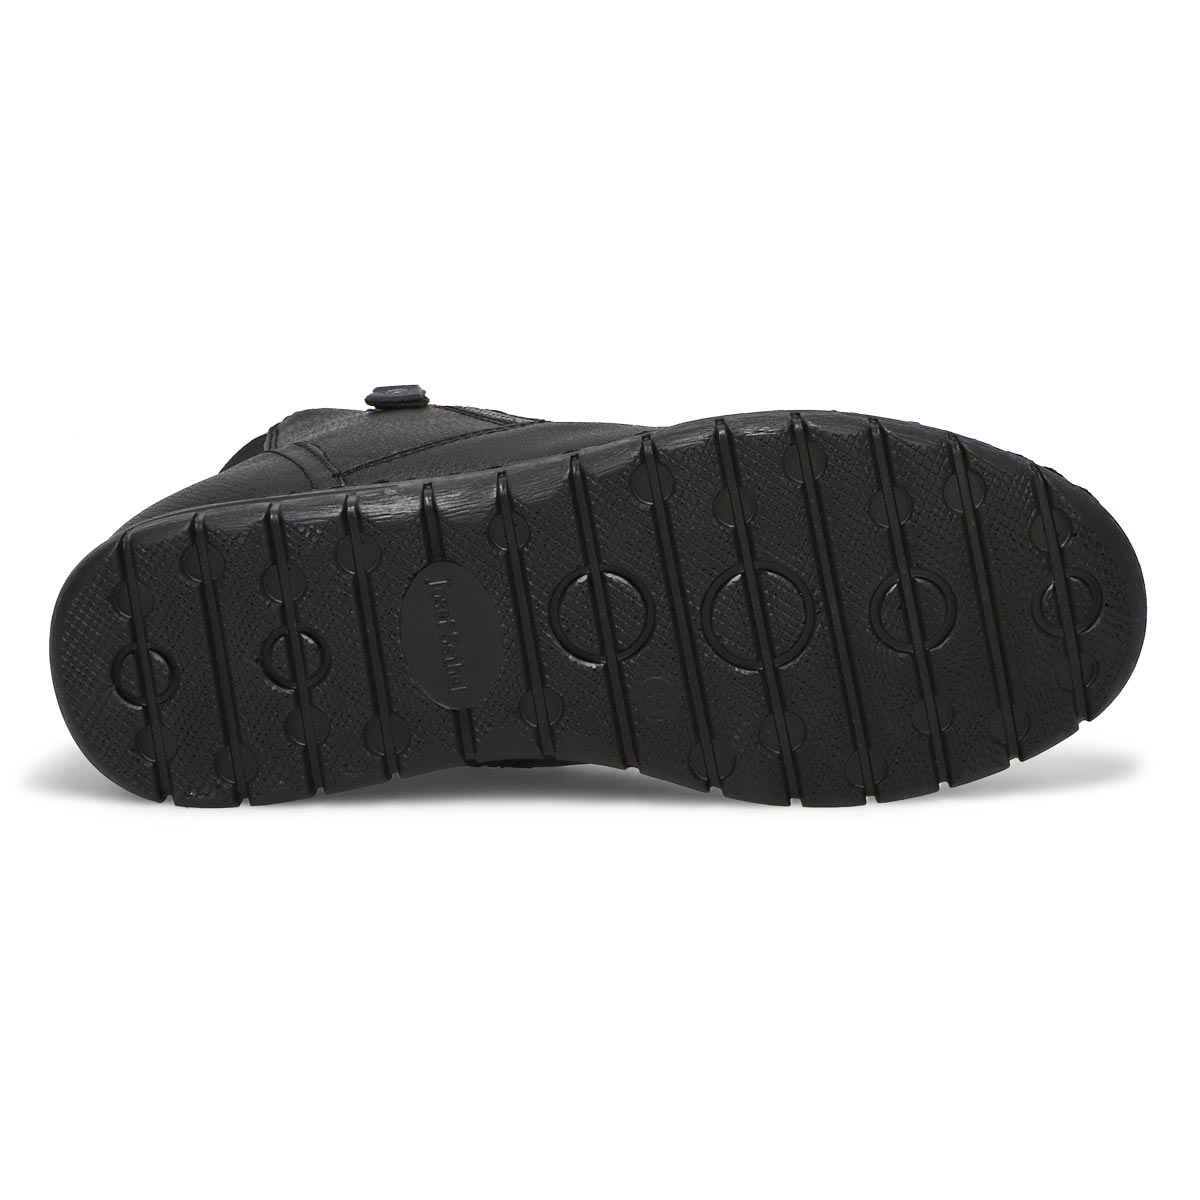 Women's Steffi 71 Waterproof Ankle Boot - Black